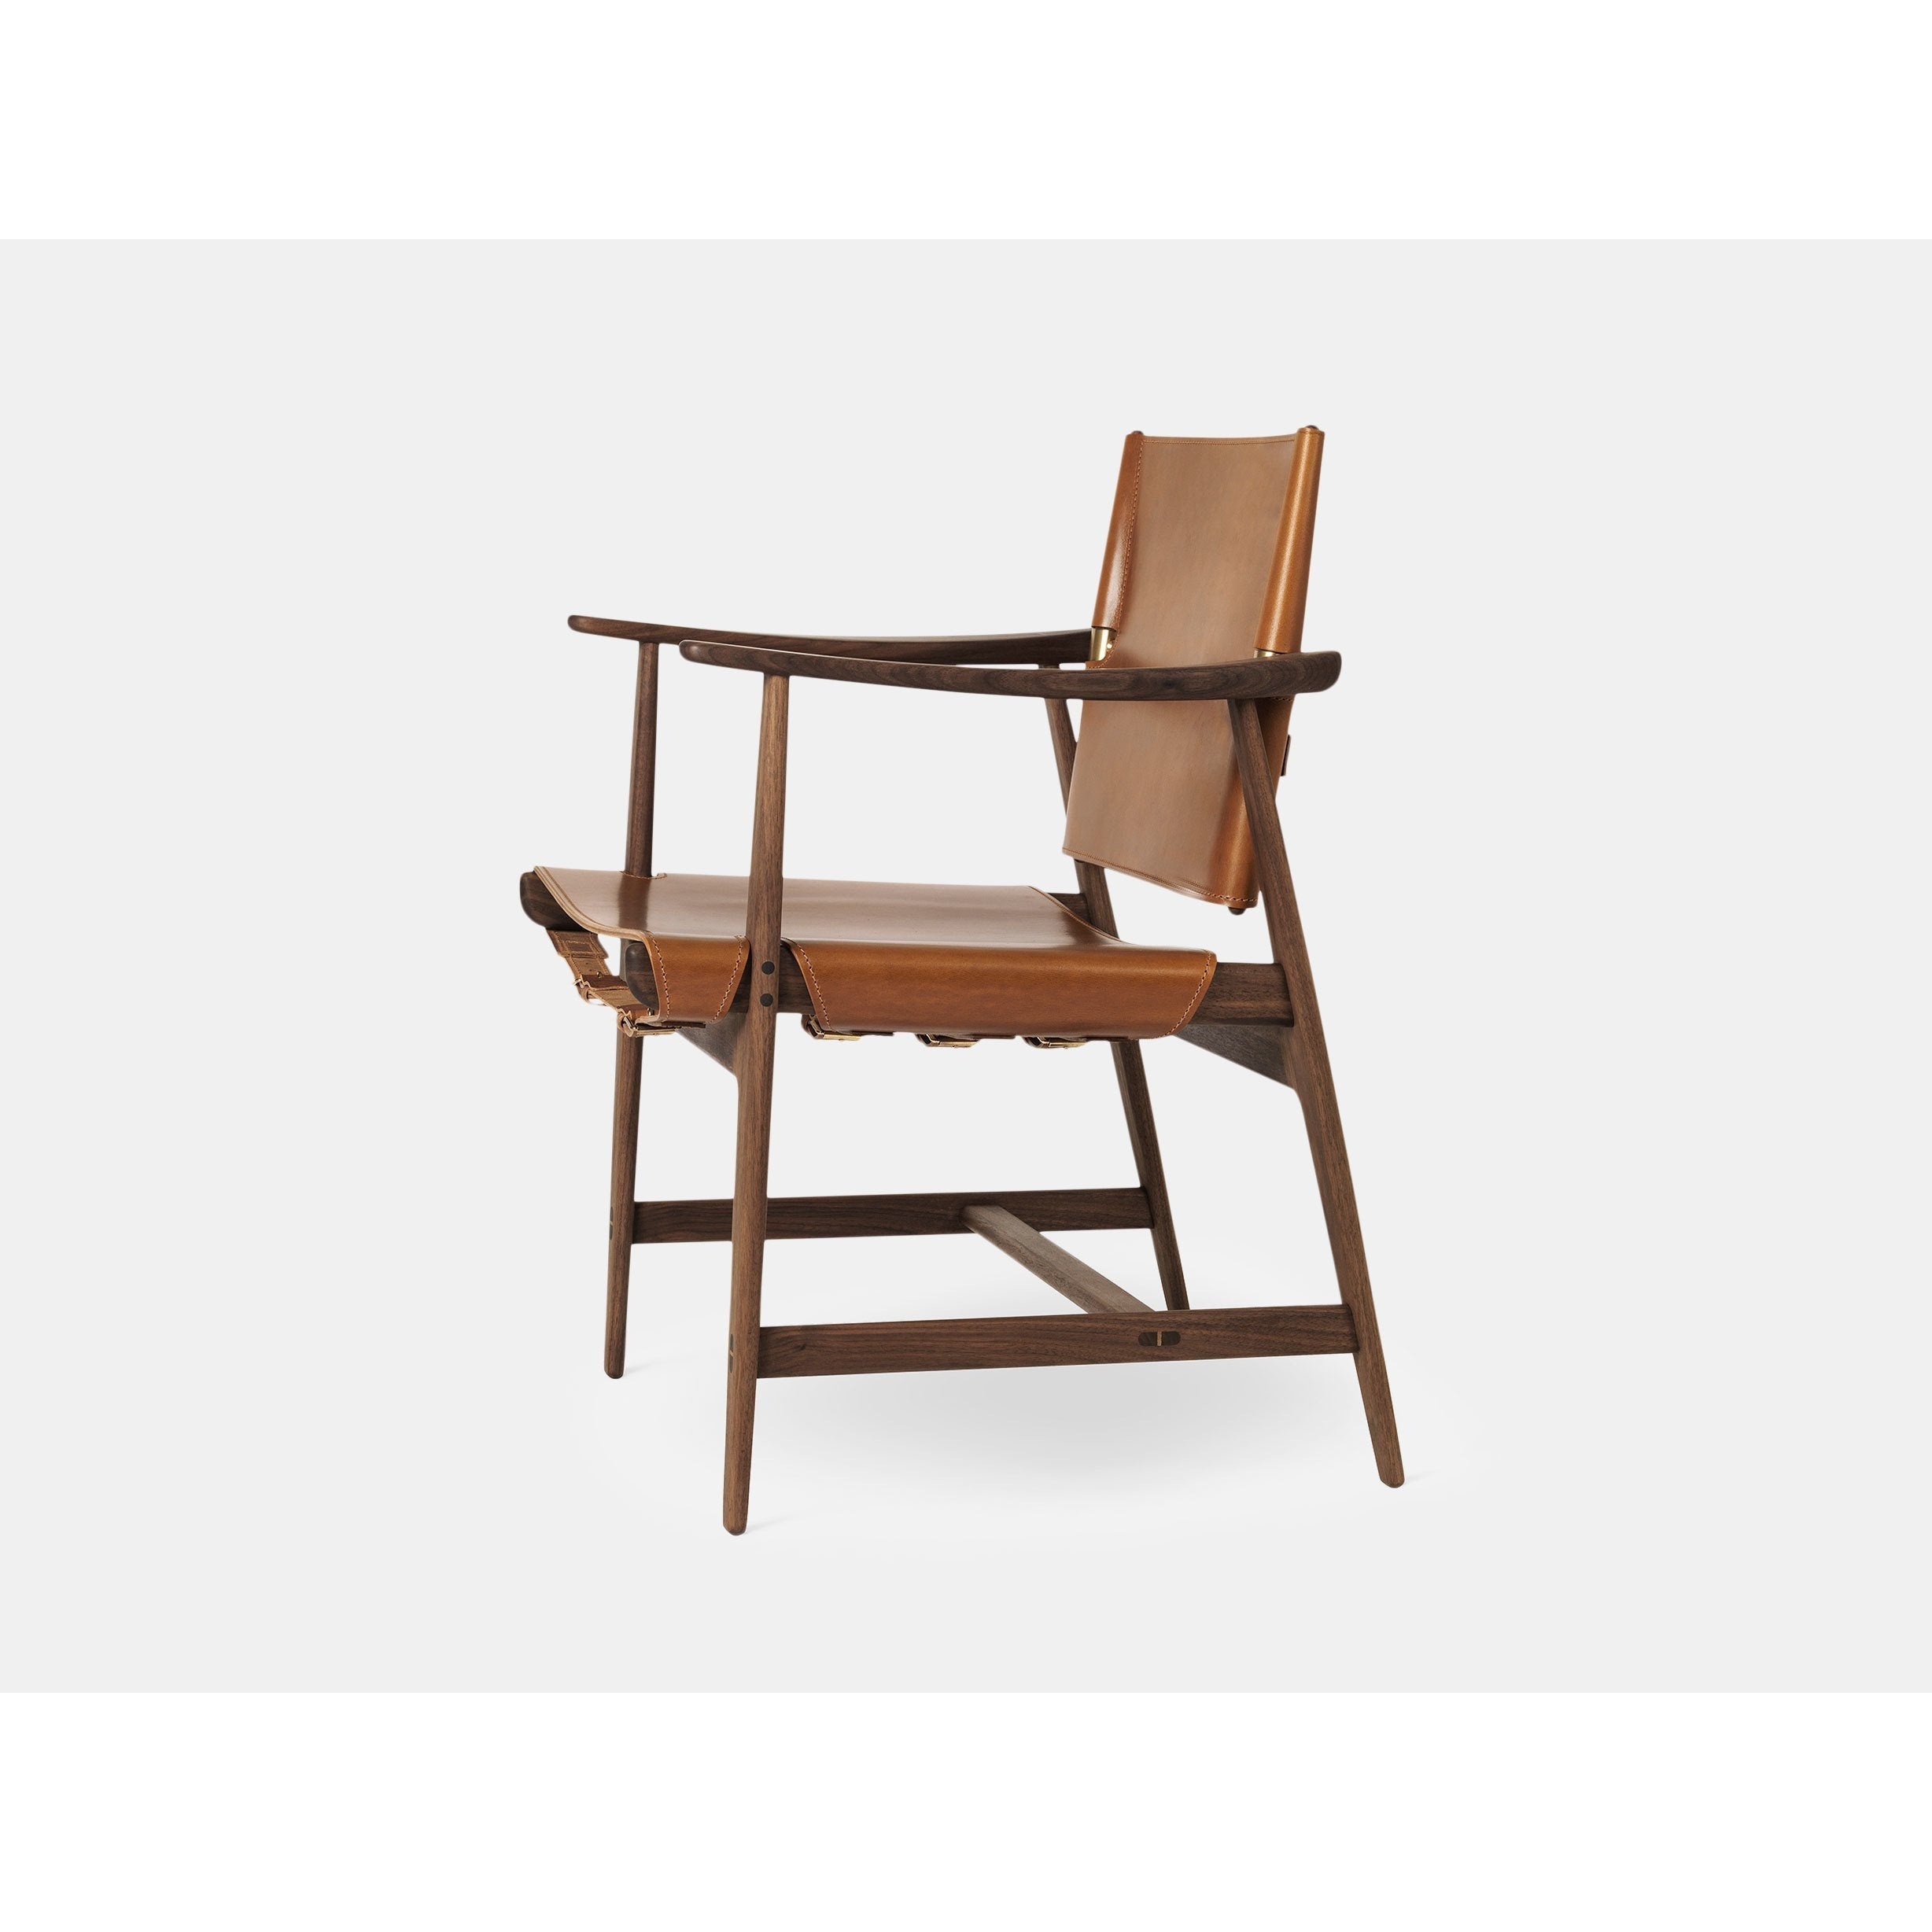 Carl Hansen BM1106 Huntsman Chair, oljad valnöt/cognac läder